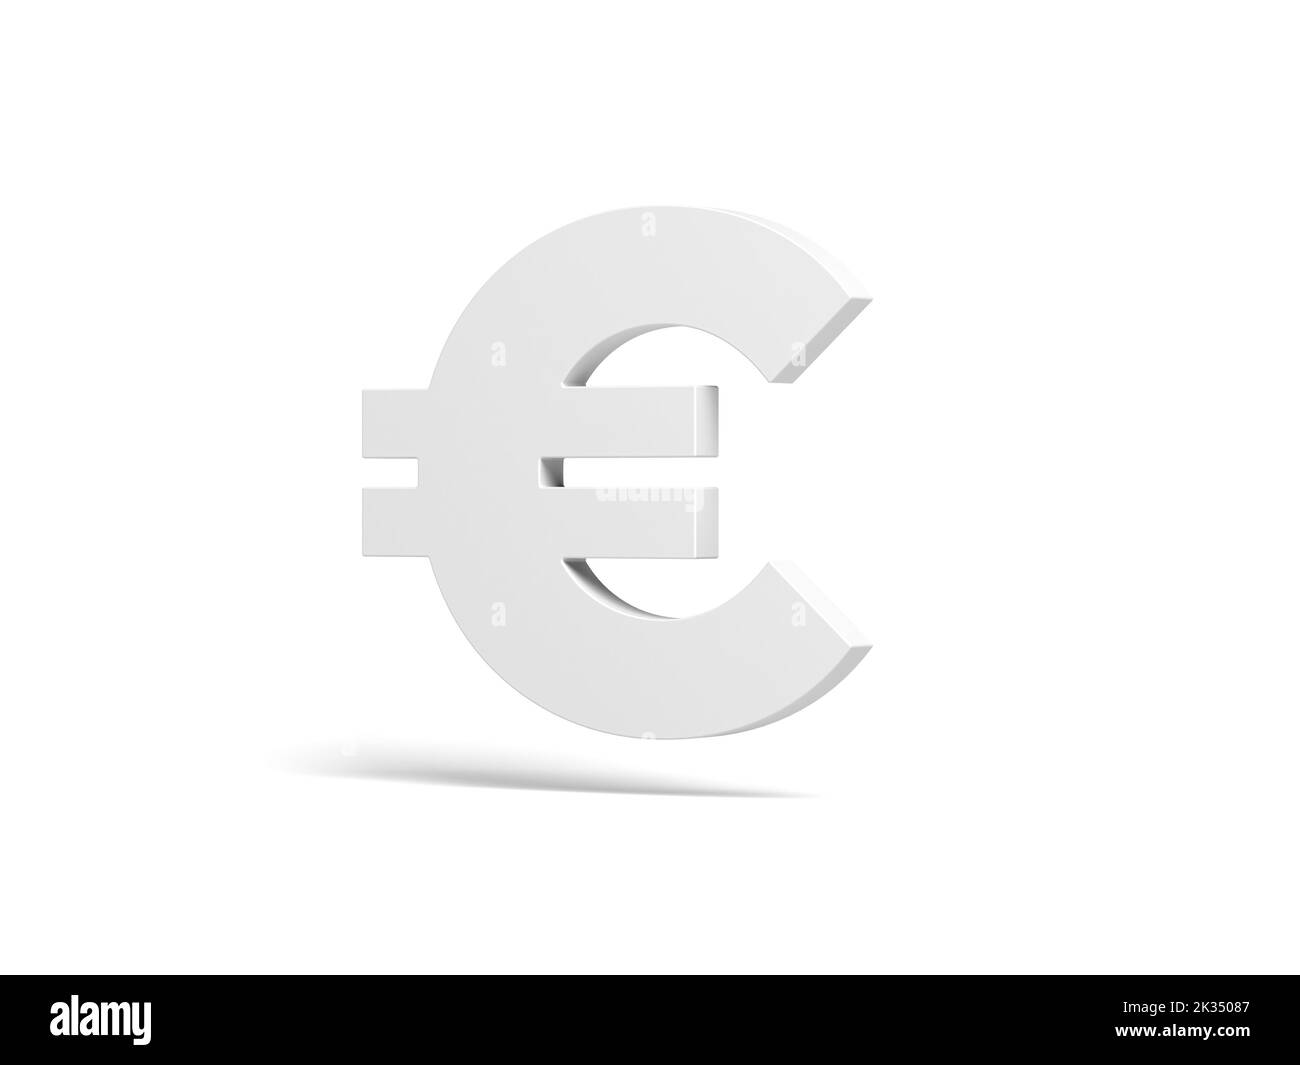 Euro symbol isolated on white background. 3d illustration. Stock Photo